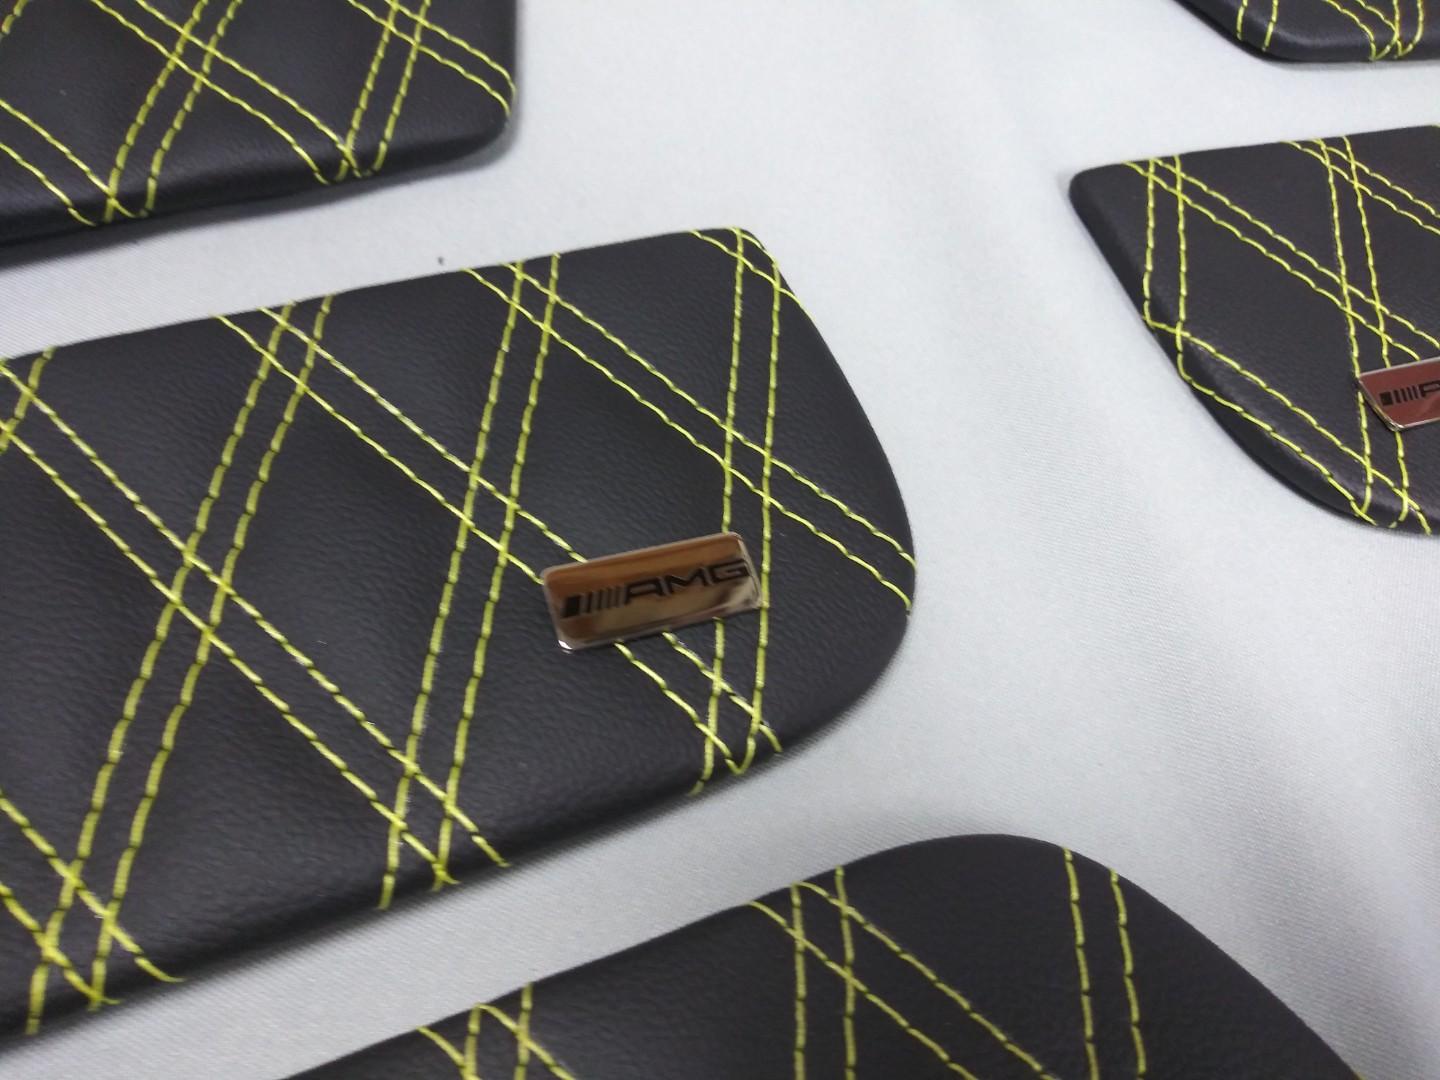 Inneneinsätze aus Öko-Leder mit Brabus-Emblemen für Türverkleidungen des Mercedes-Benz W463